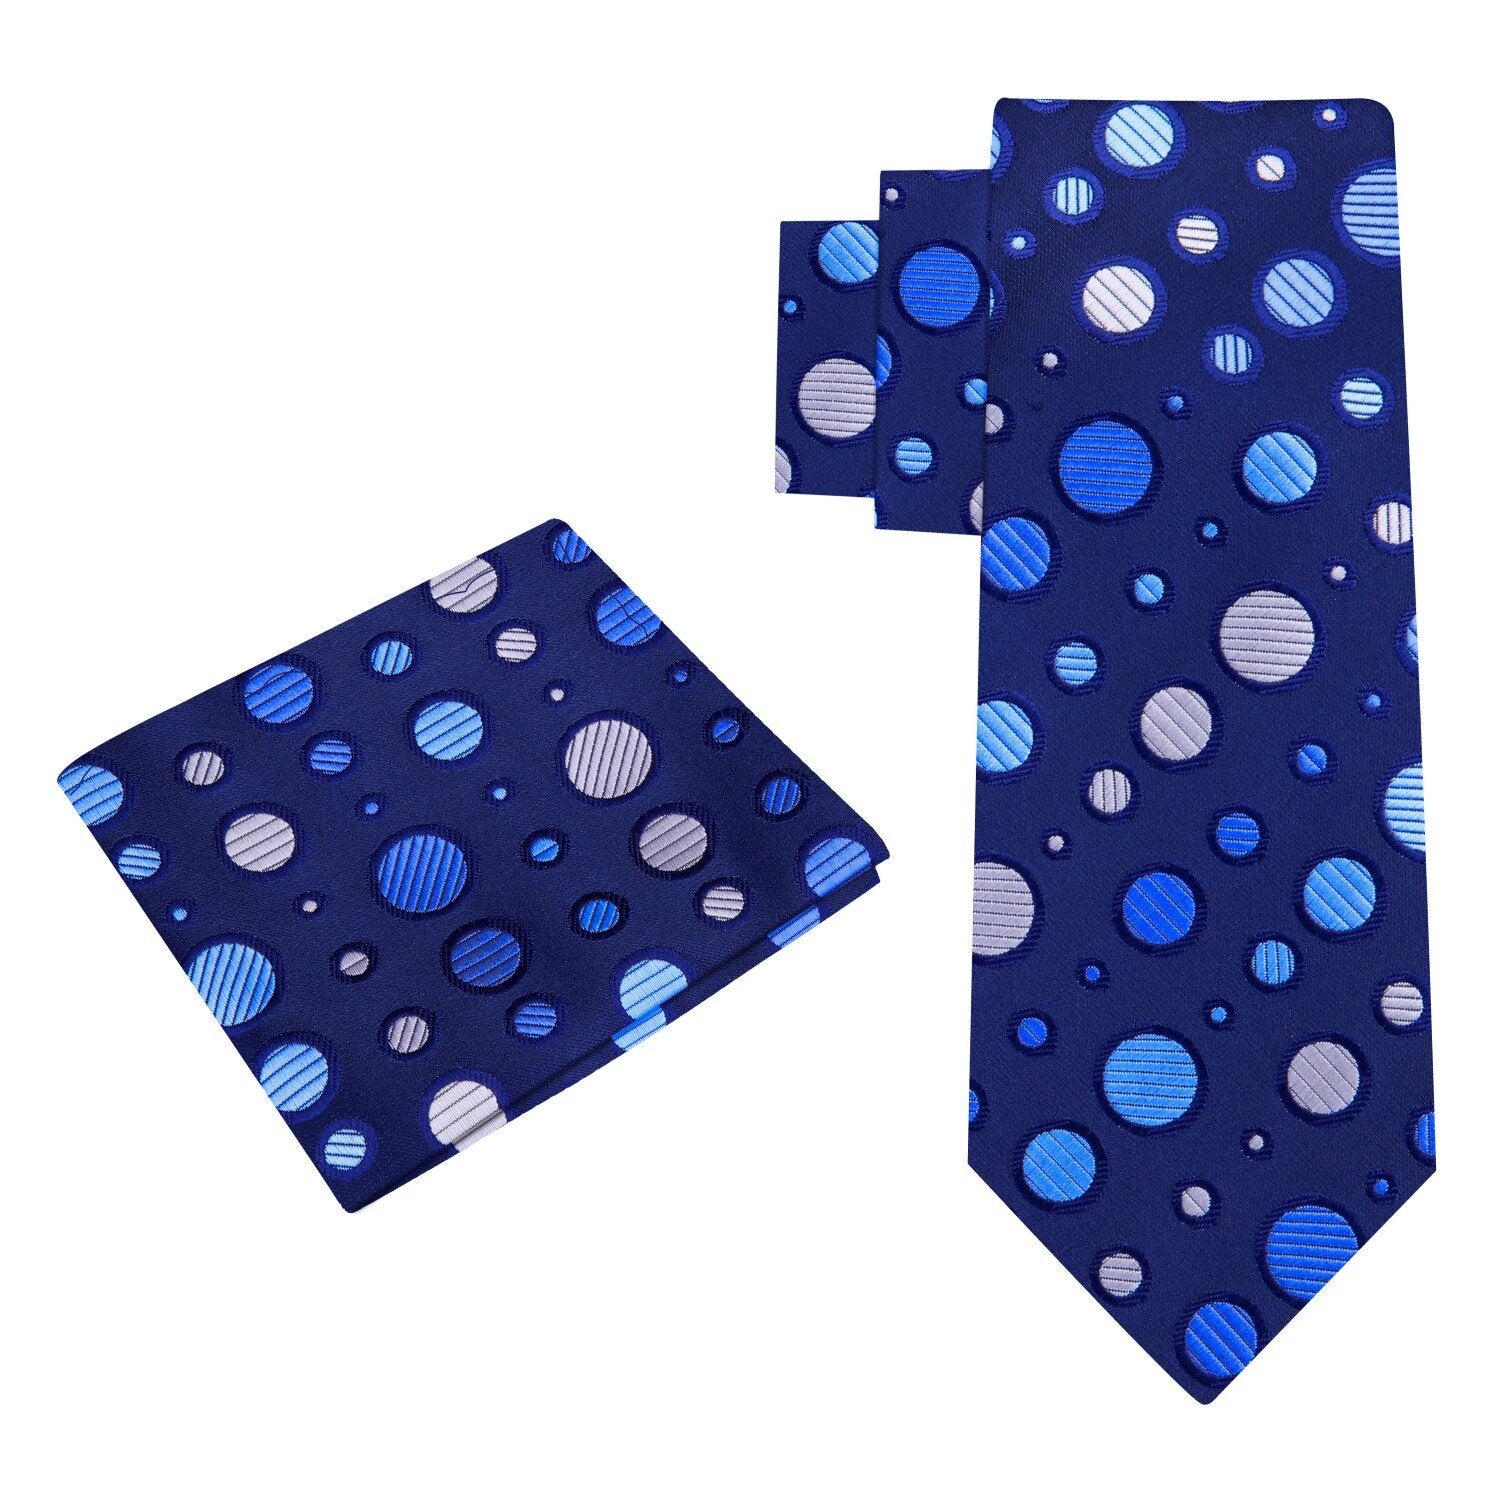 Alt view: A Dark Blue, Blue, White Polka Dot Pattern Silk Necktie, Matching Pocket Square